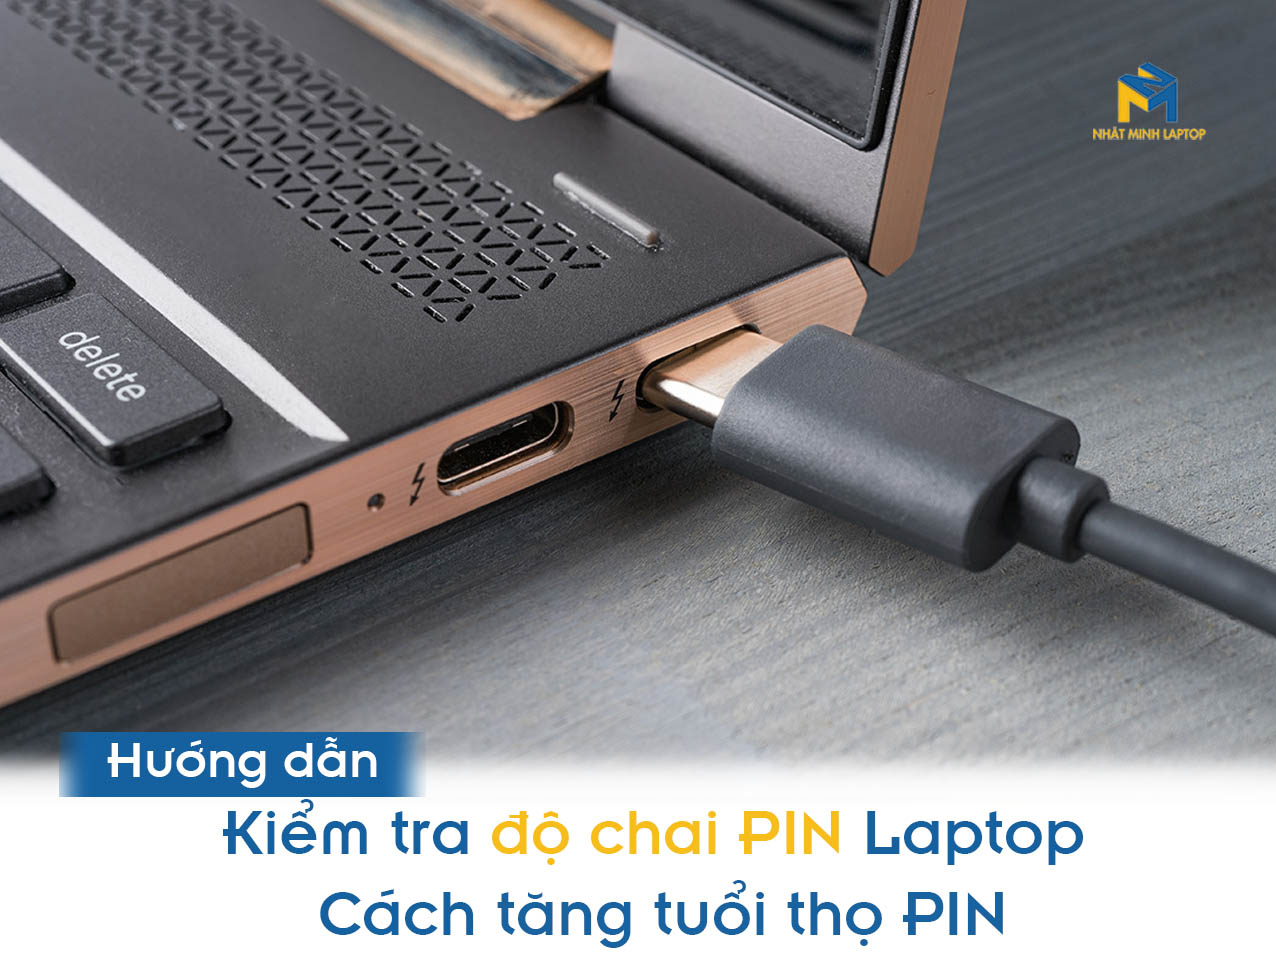 kiểm tra độ chai PIN Laptop